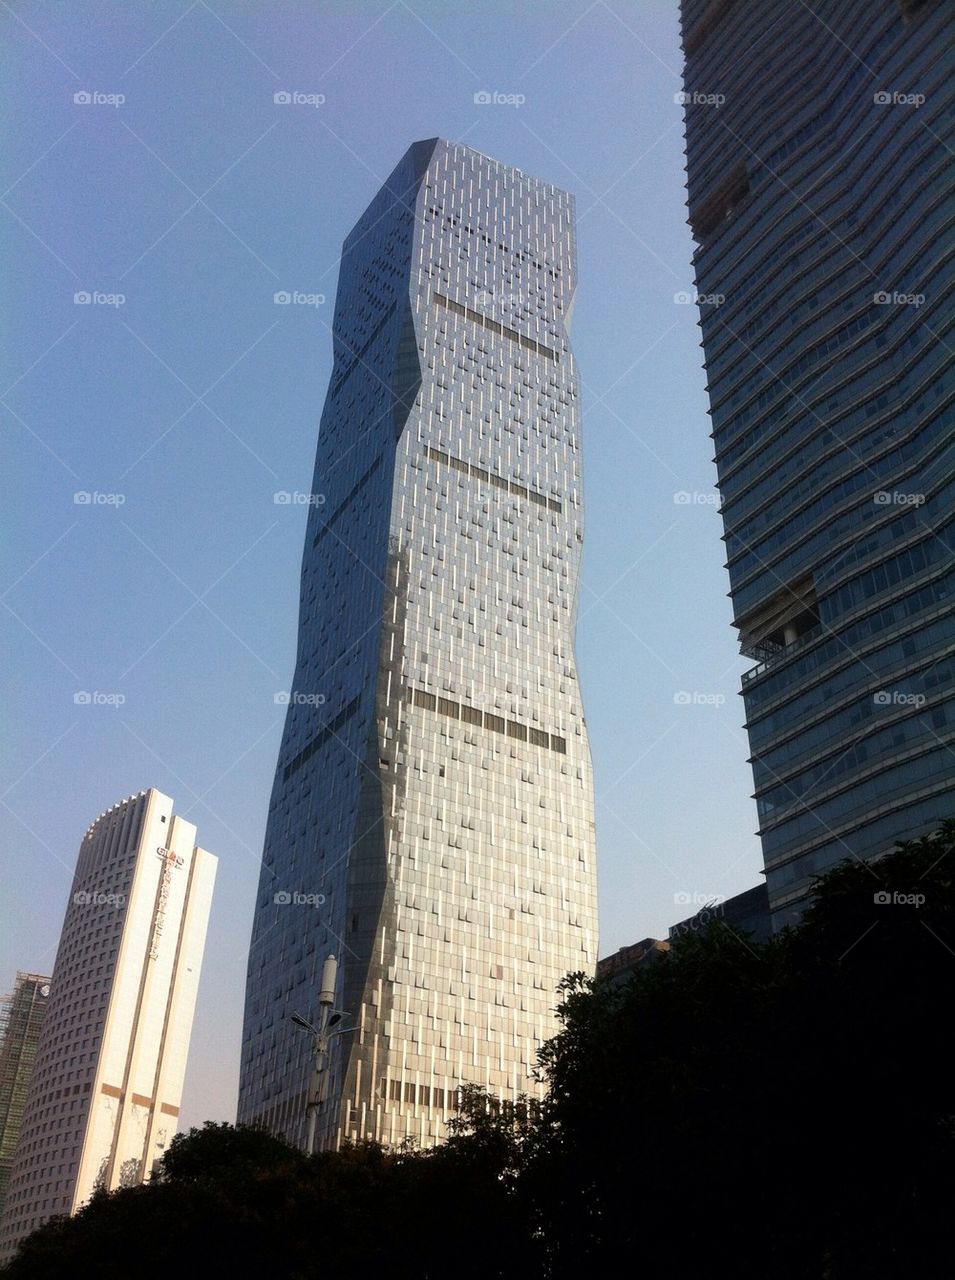 Skyscraper in Guangzhou, China